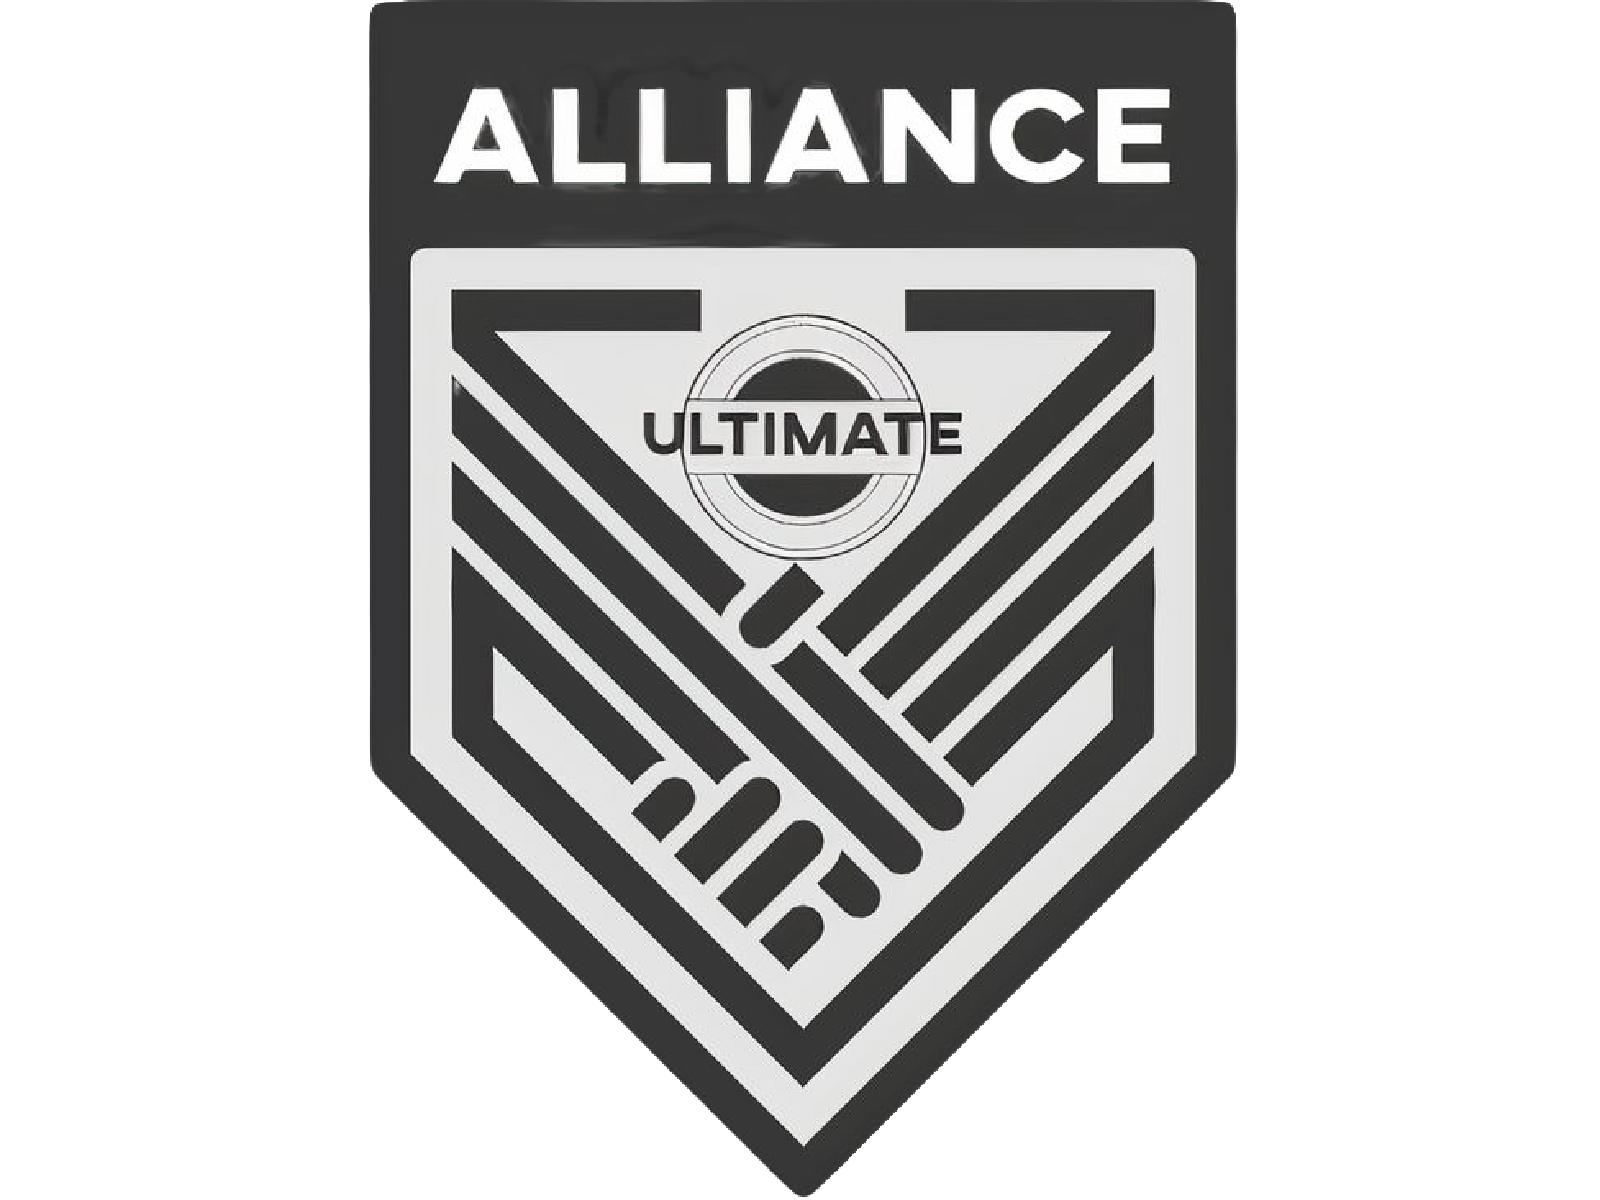 Alliance Ultimate